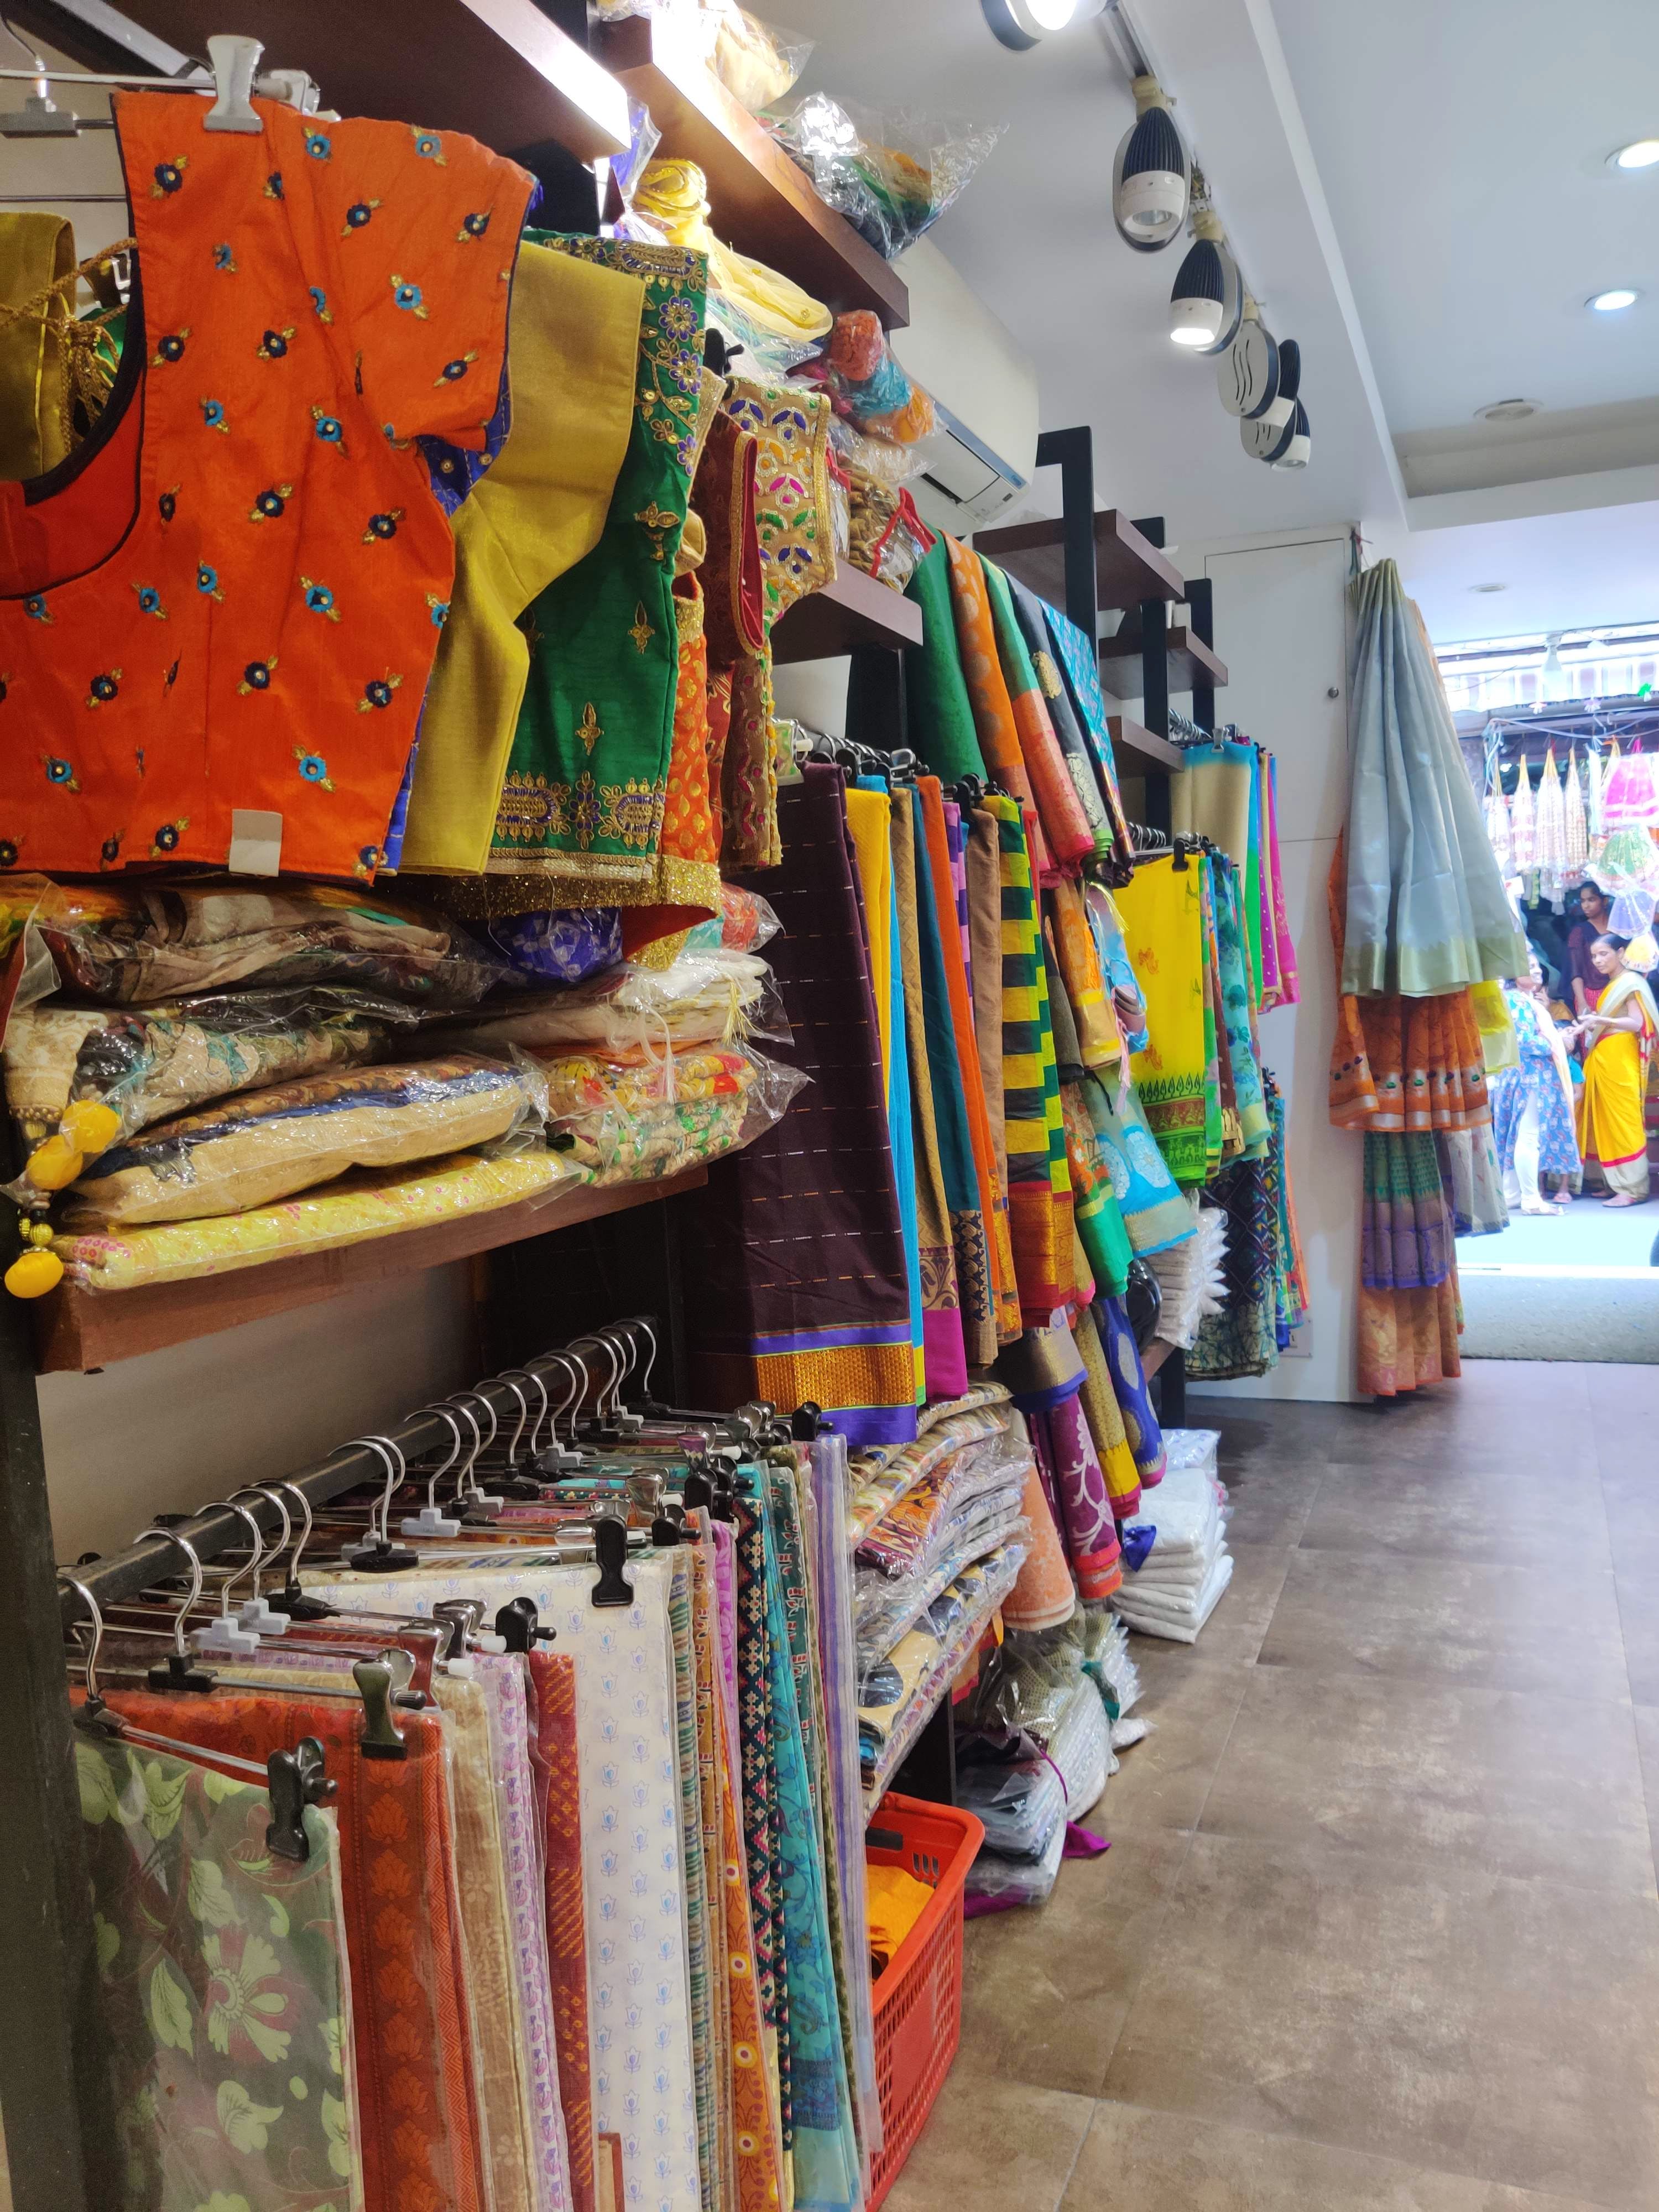 Outlet store,Bazaar,Textile,Boutique,Marketplace,Retail,Building,Room,Shopping,Market